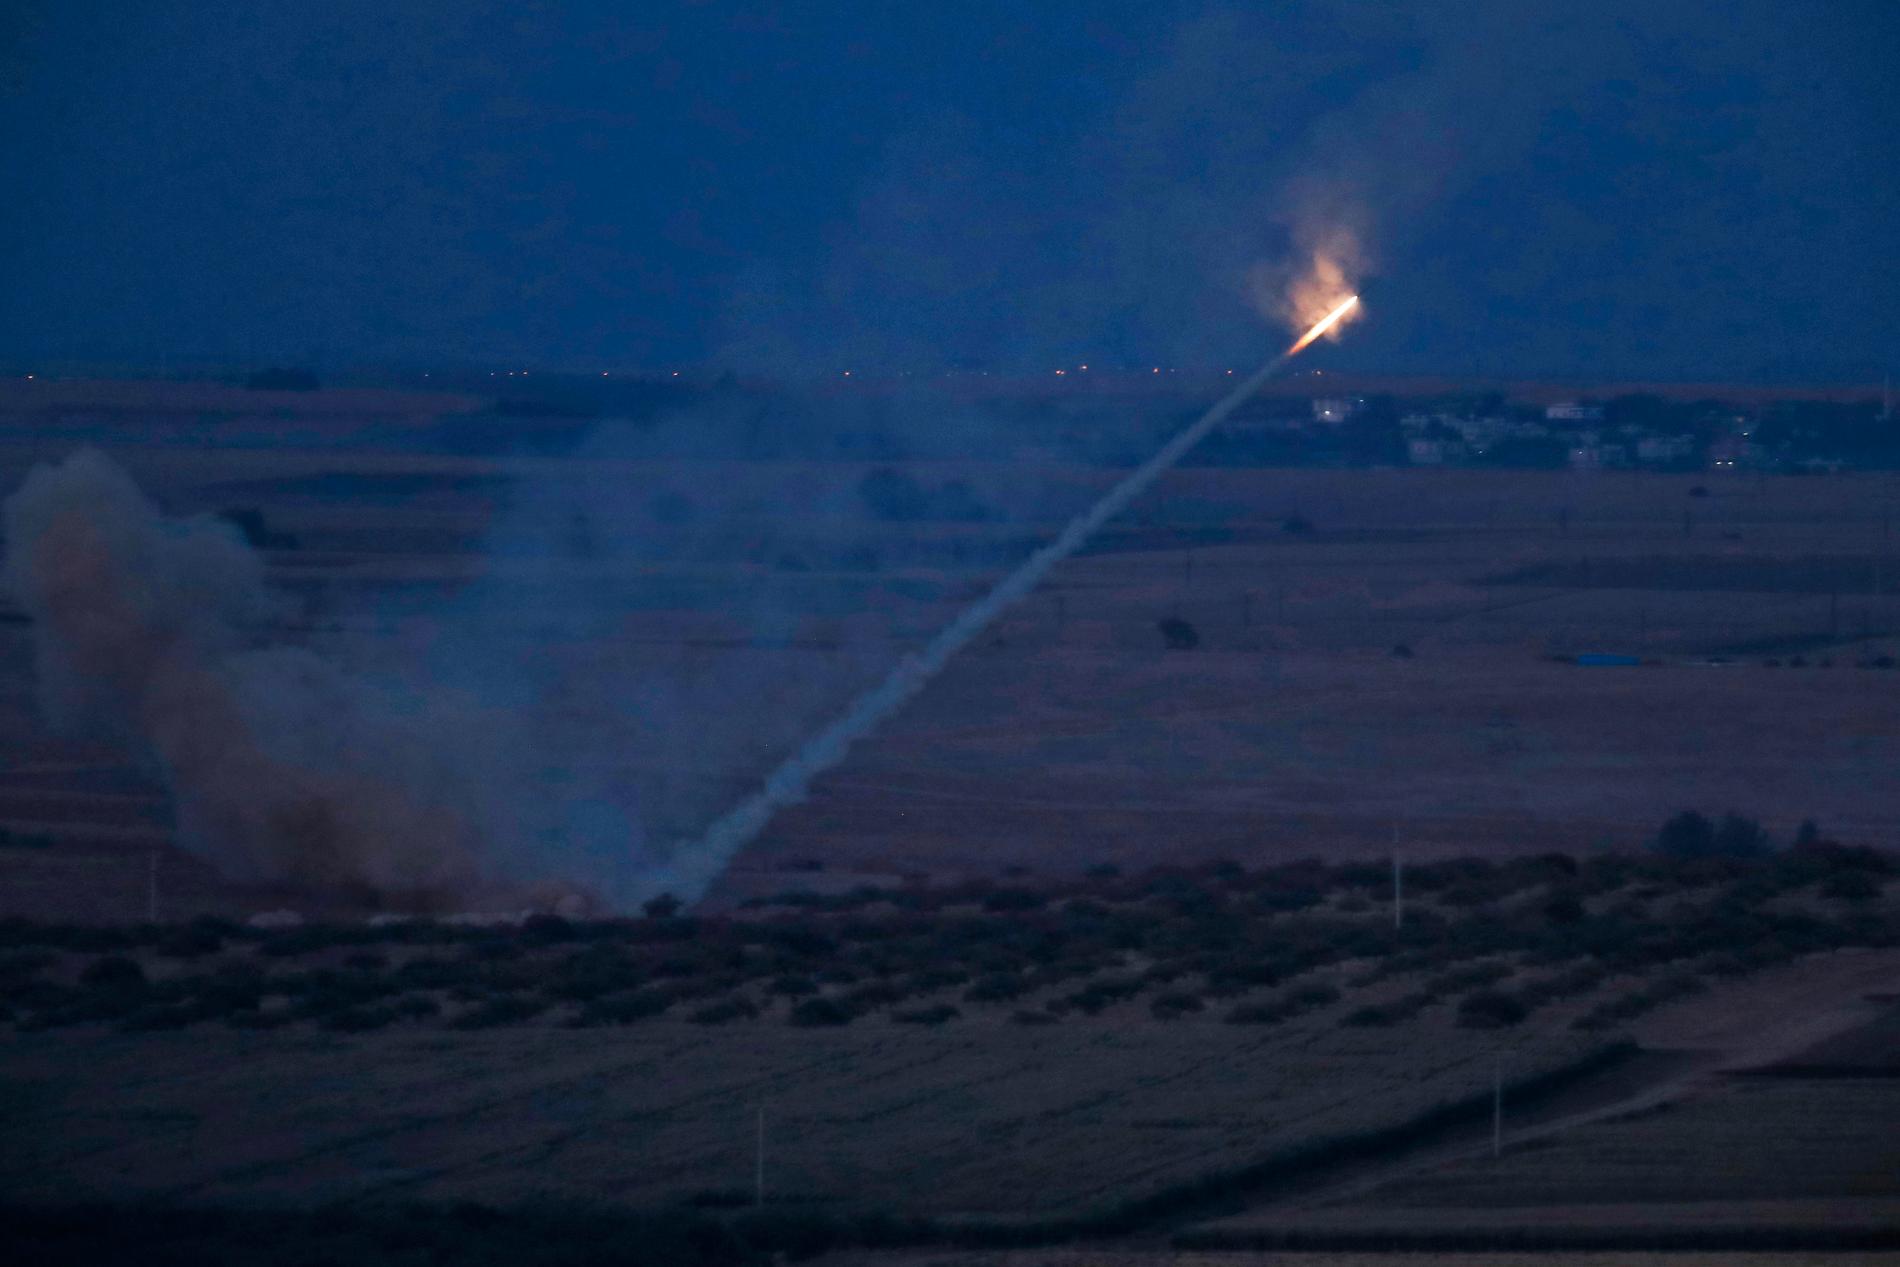 Turkiska styrkor avfärdar missiler mot Ras al-Ayn, Syrien. Bild tagen från turkiska sidan av gränsen mellan Turkiet och Syrien under tisdagen.